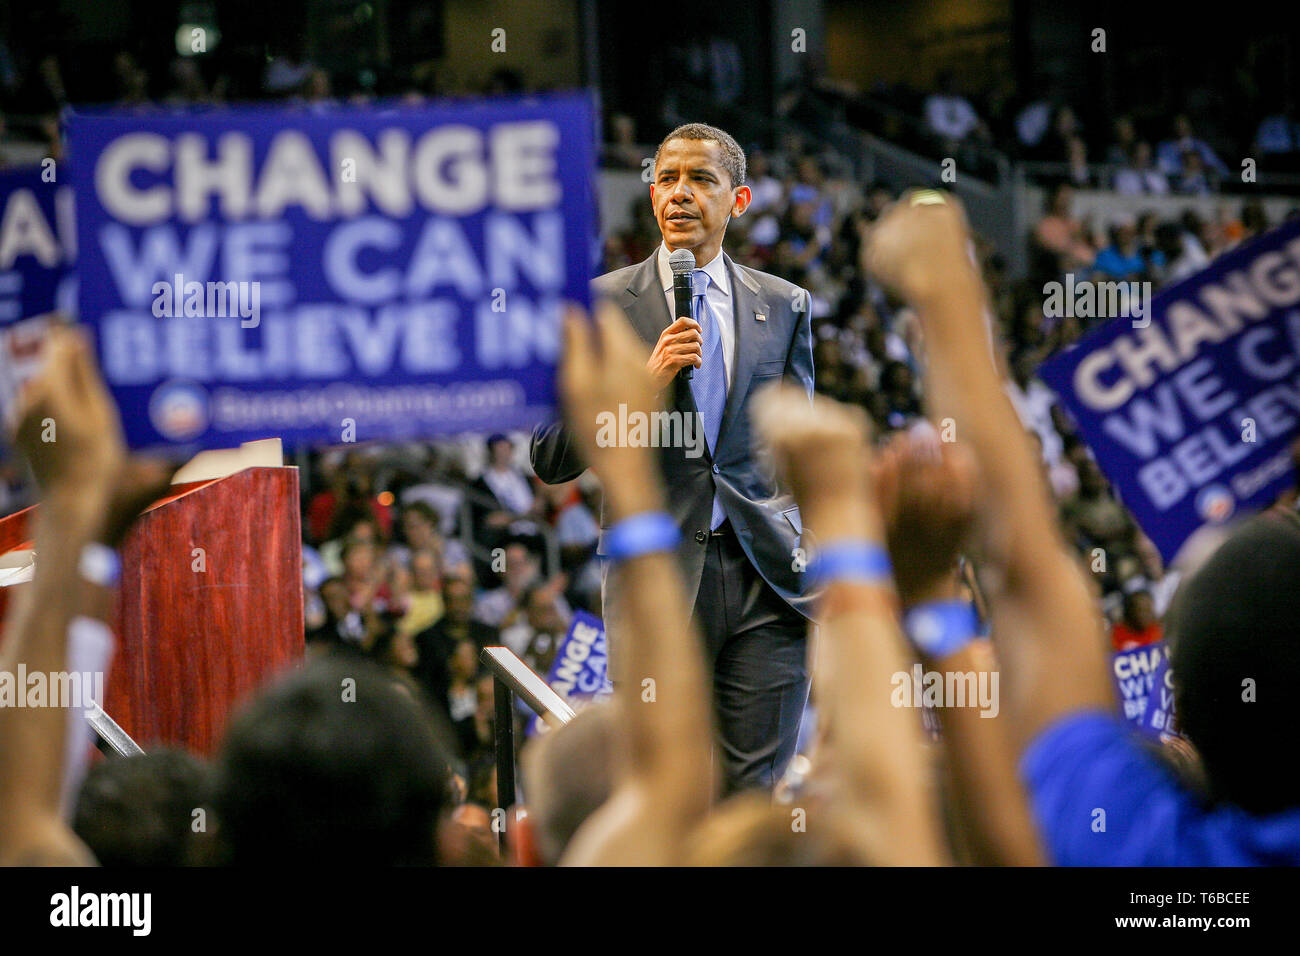 La présidence Barak Obama (D) maintient au speach St Pete Times Forum à Saint-Pétersbourg / Tampa. Banque D'Images